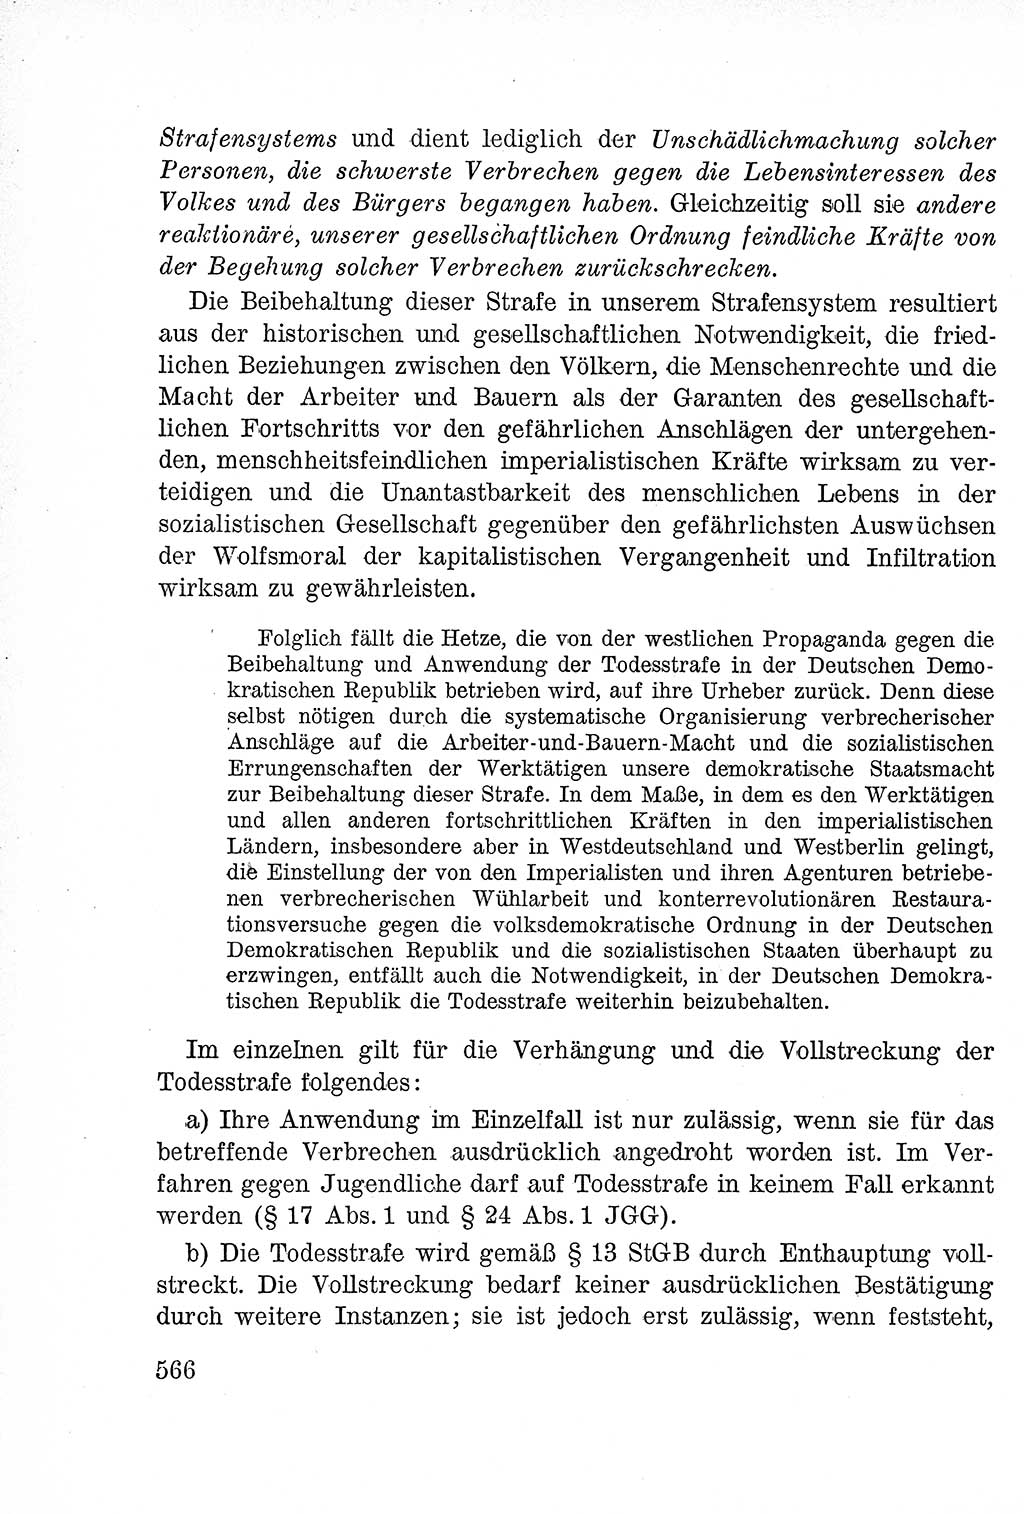 Lehrbuch des Strafrechts der Deutschen Demokratischen Republik (DDR), Allgemeiner Teil 1957, Seite 566 (Lb. Strafr. DDR AT 1957, S. 566)